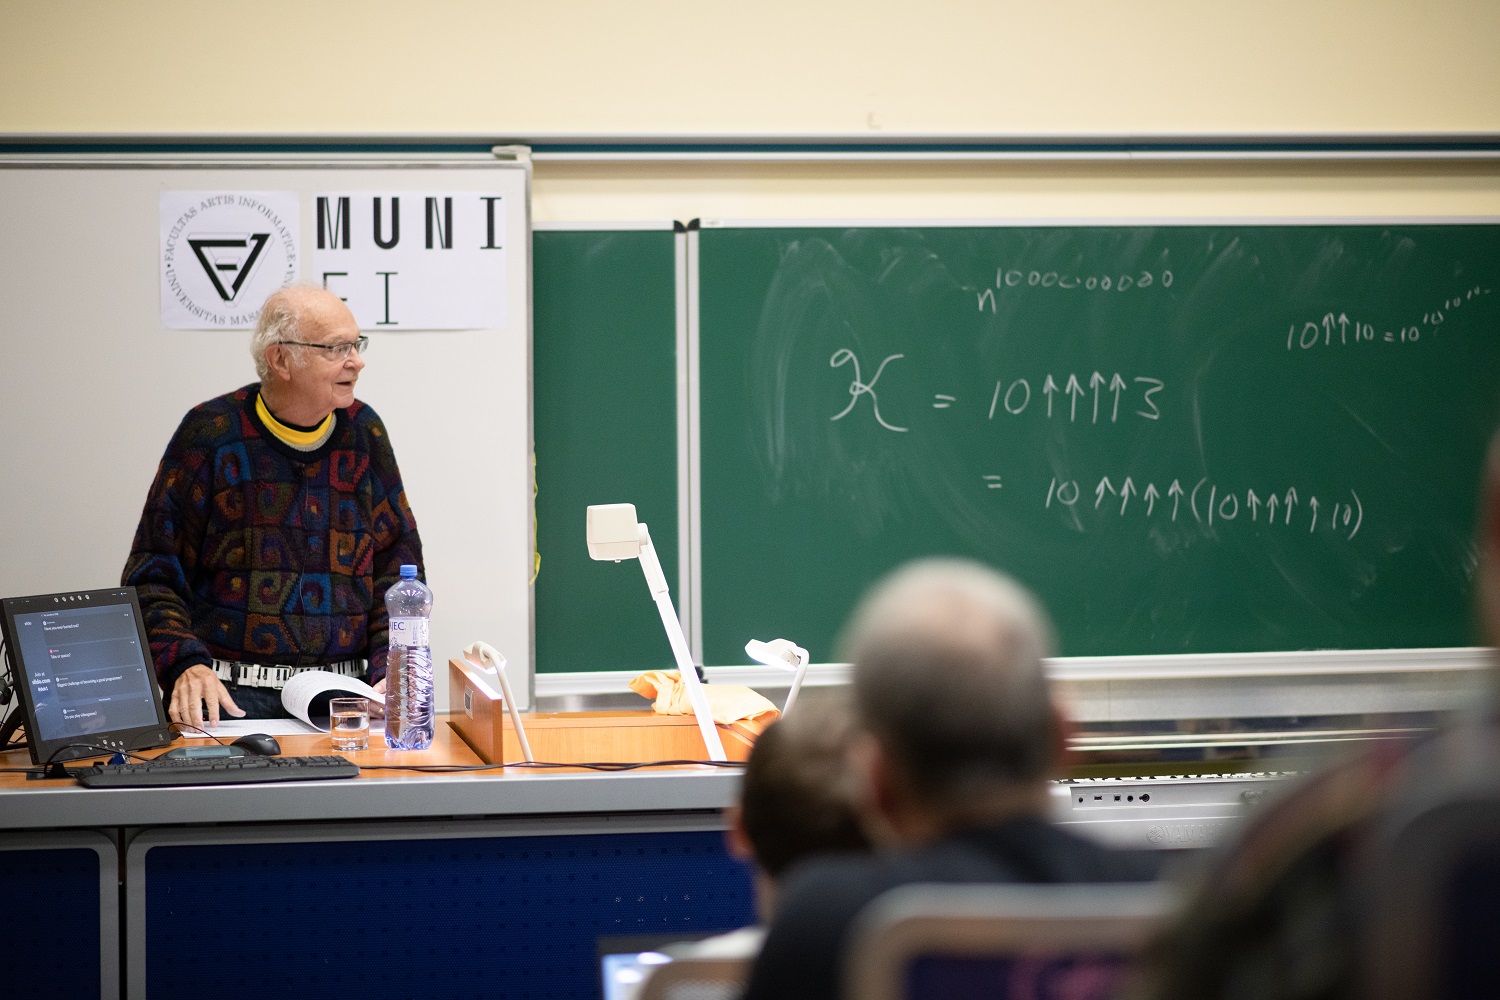 Donald E. Knuth-Boundless Interests at FI MU